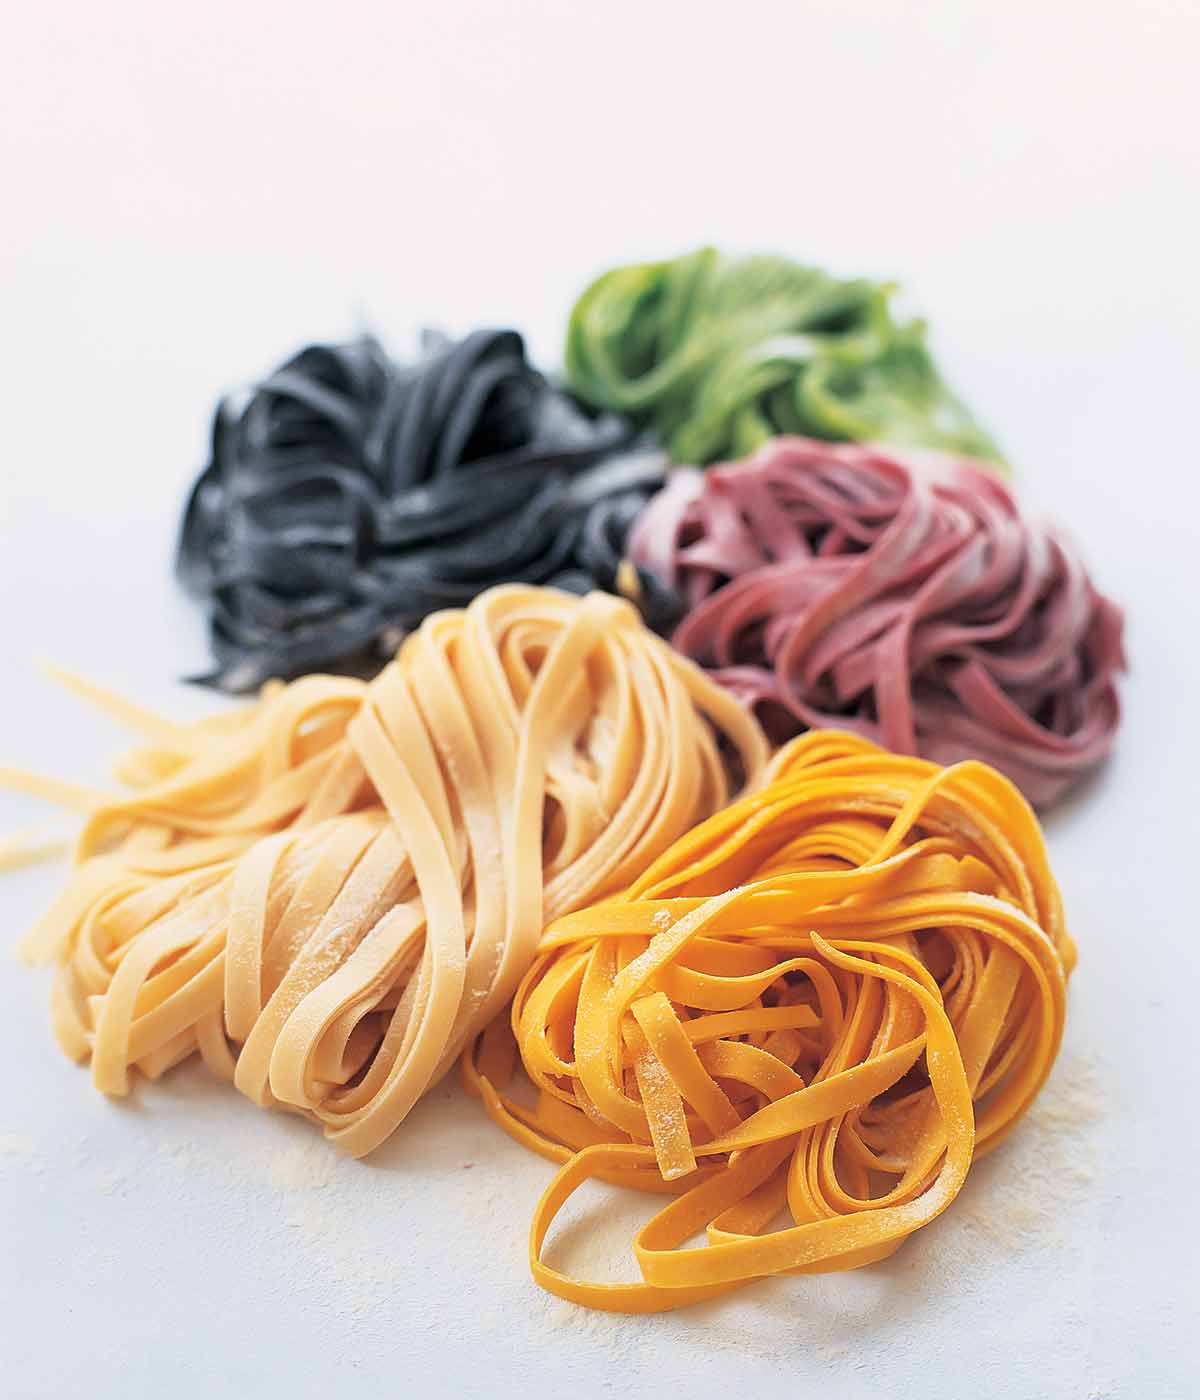 Hemlagad pastadeg i 5 färger, vanligt bläckfiskbläck, spenat, betor och saffran på vit bakgrund.